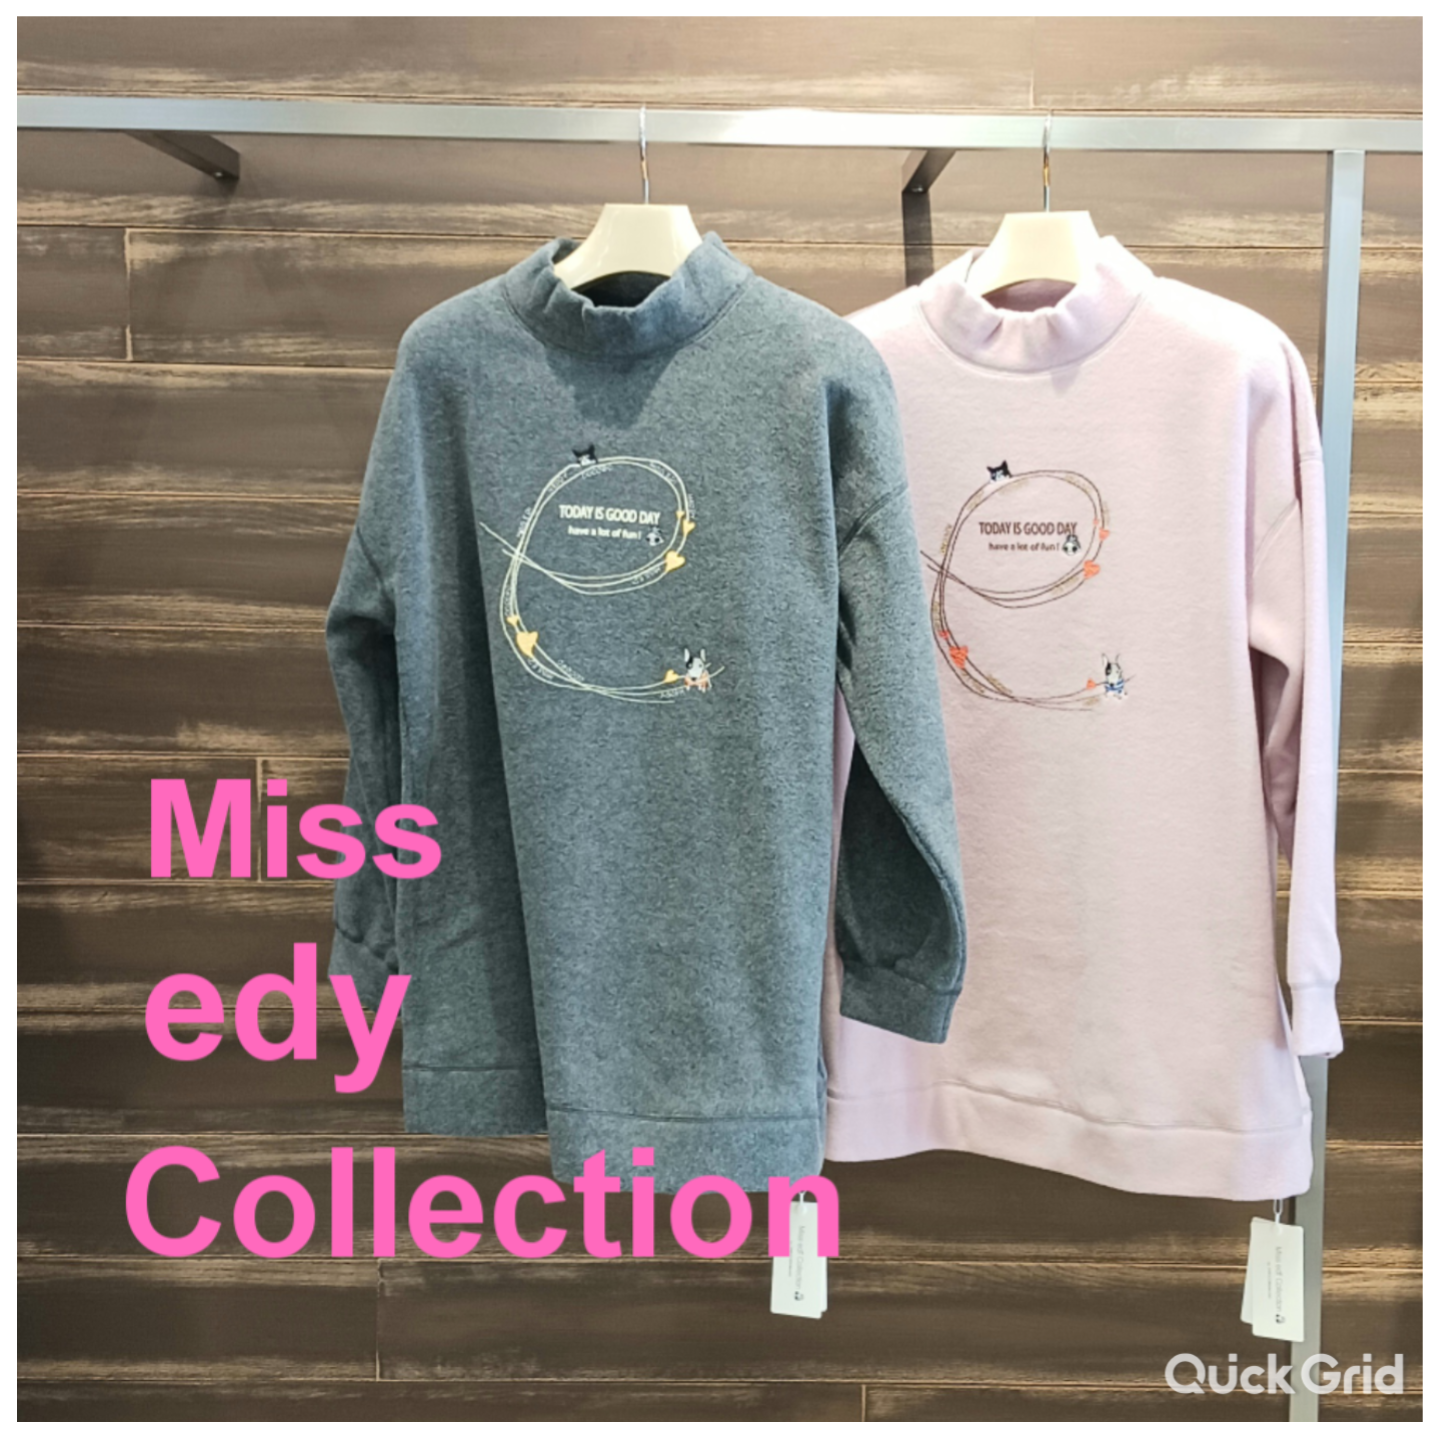 新入荷】🍁『Miss edy Collection 』ミスエディコレクション)new 